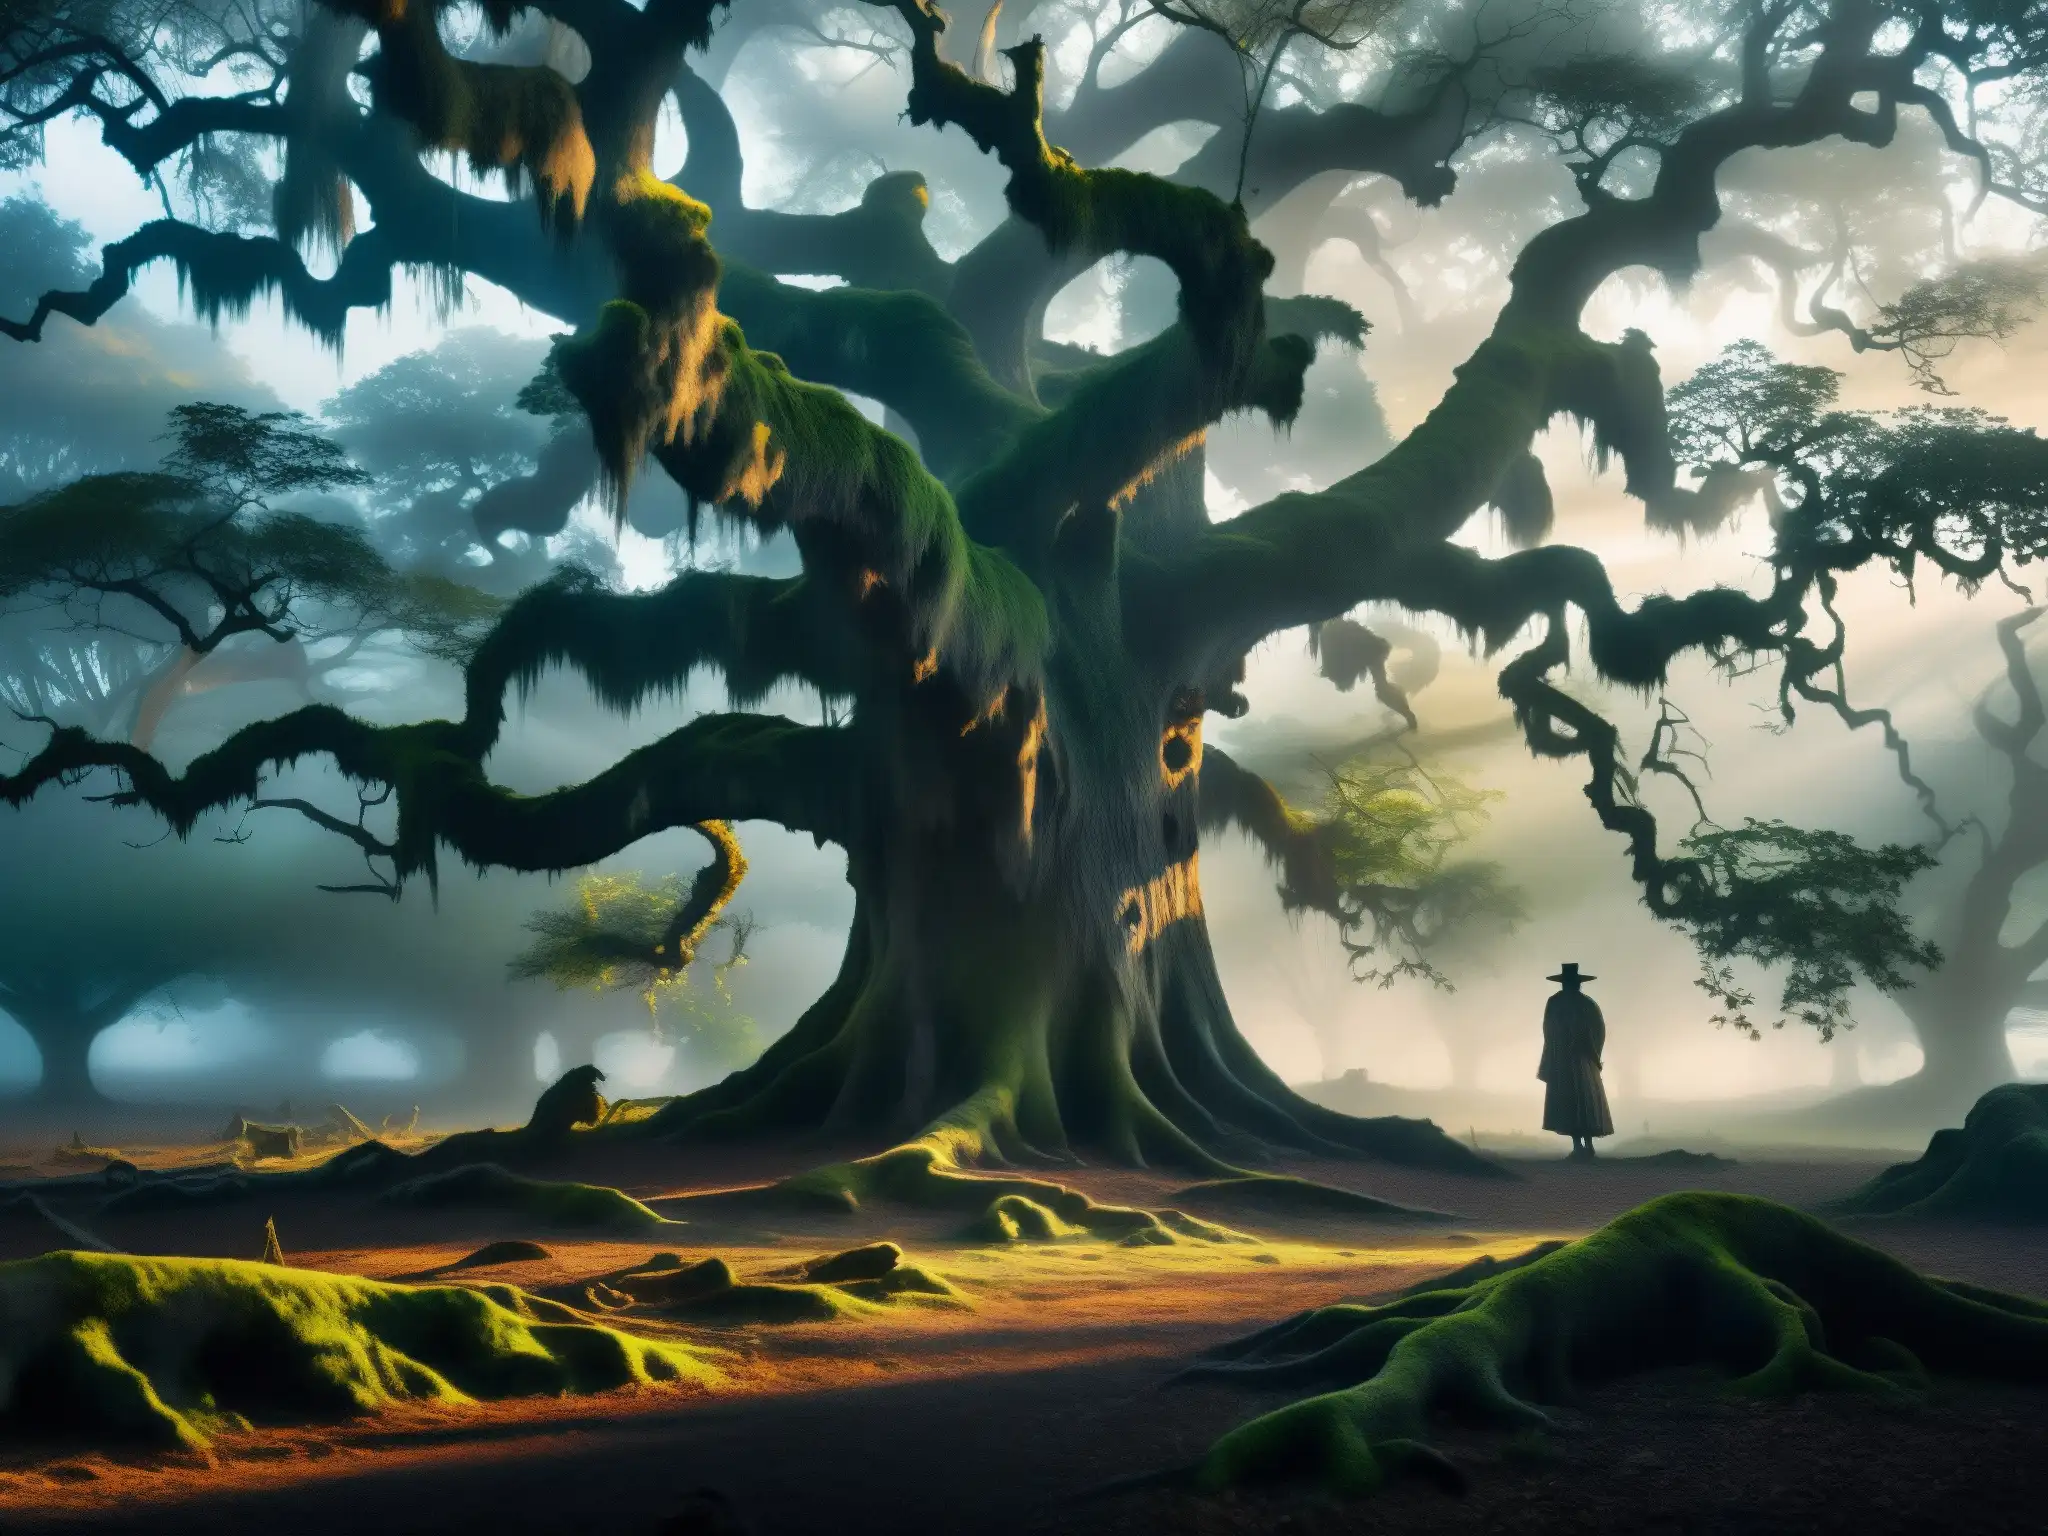 En el misterioso bosque de Inunaki, la verdad detrás de la leyenda cobra vida en la oscuridad y la niebla